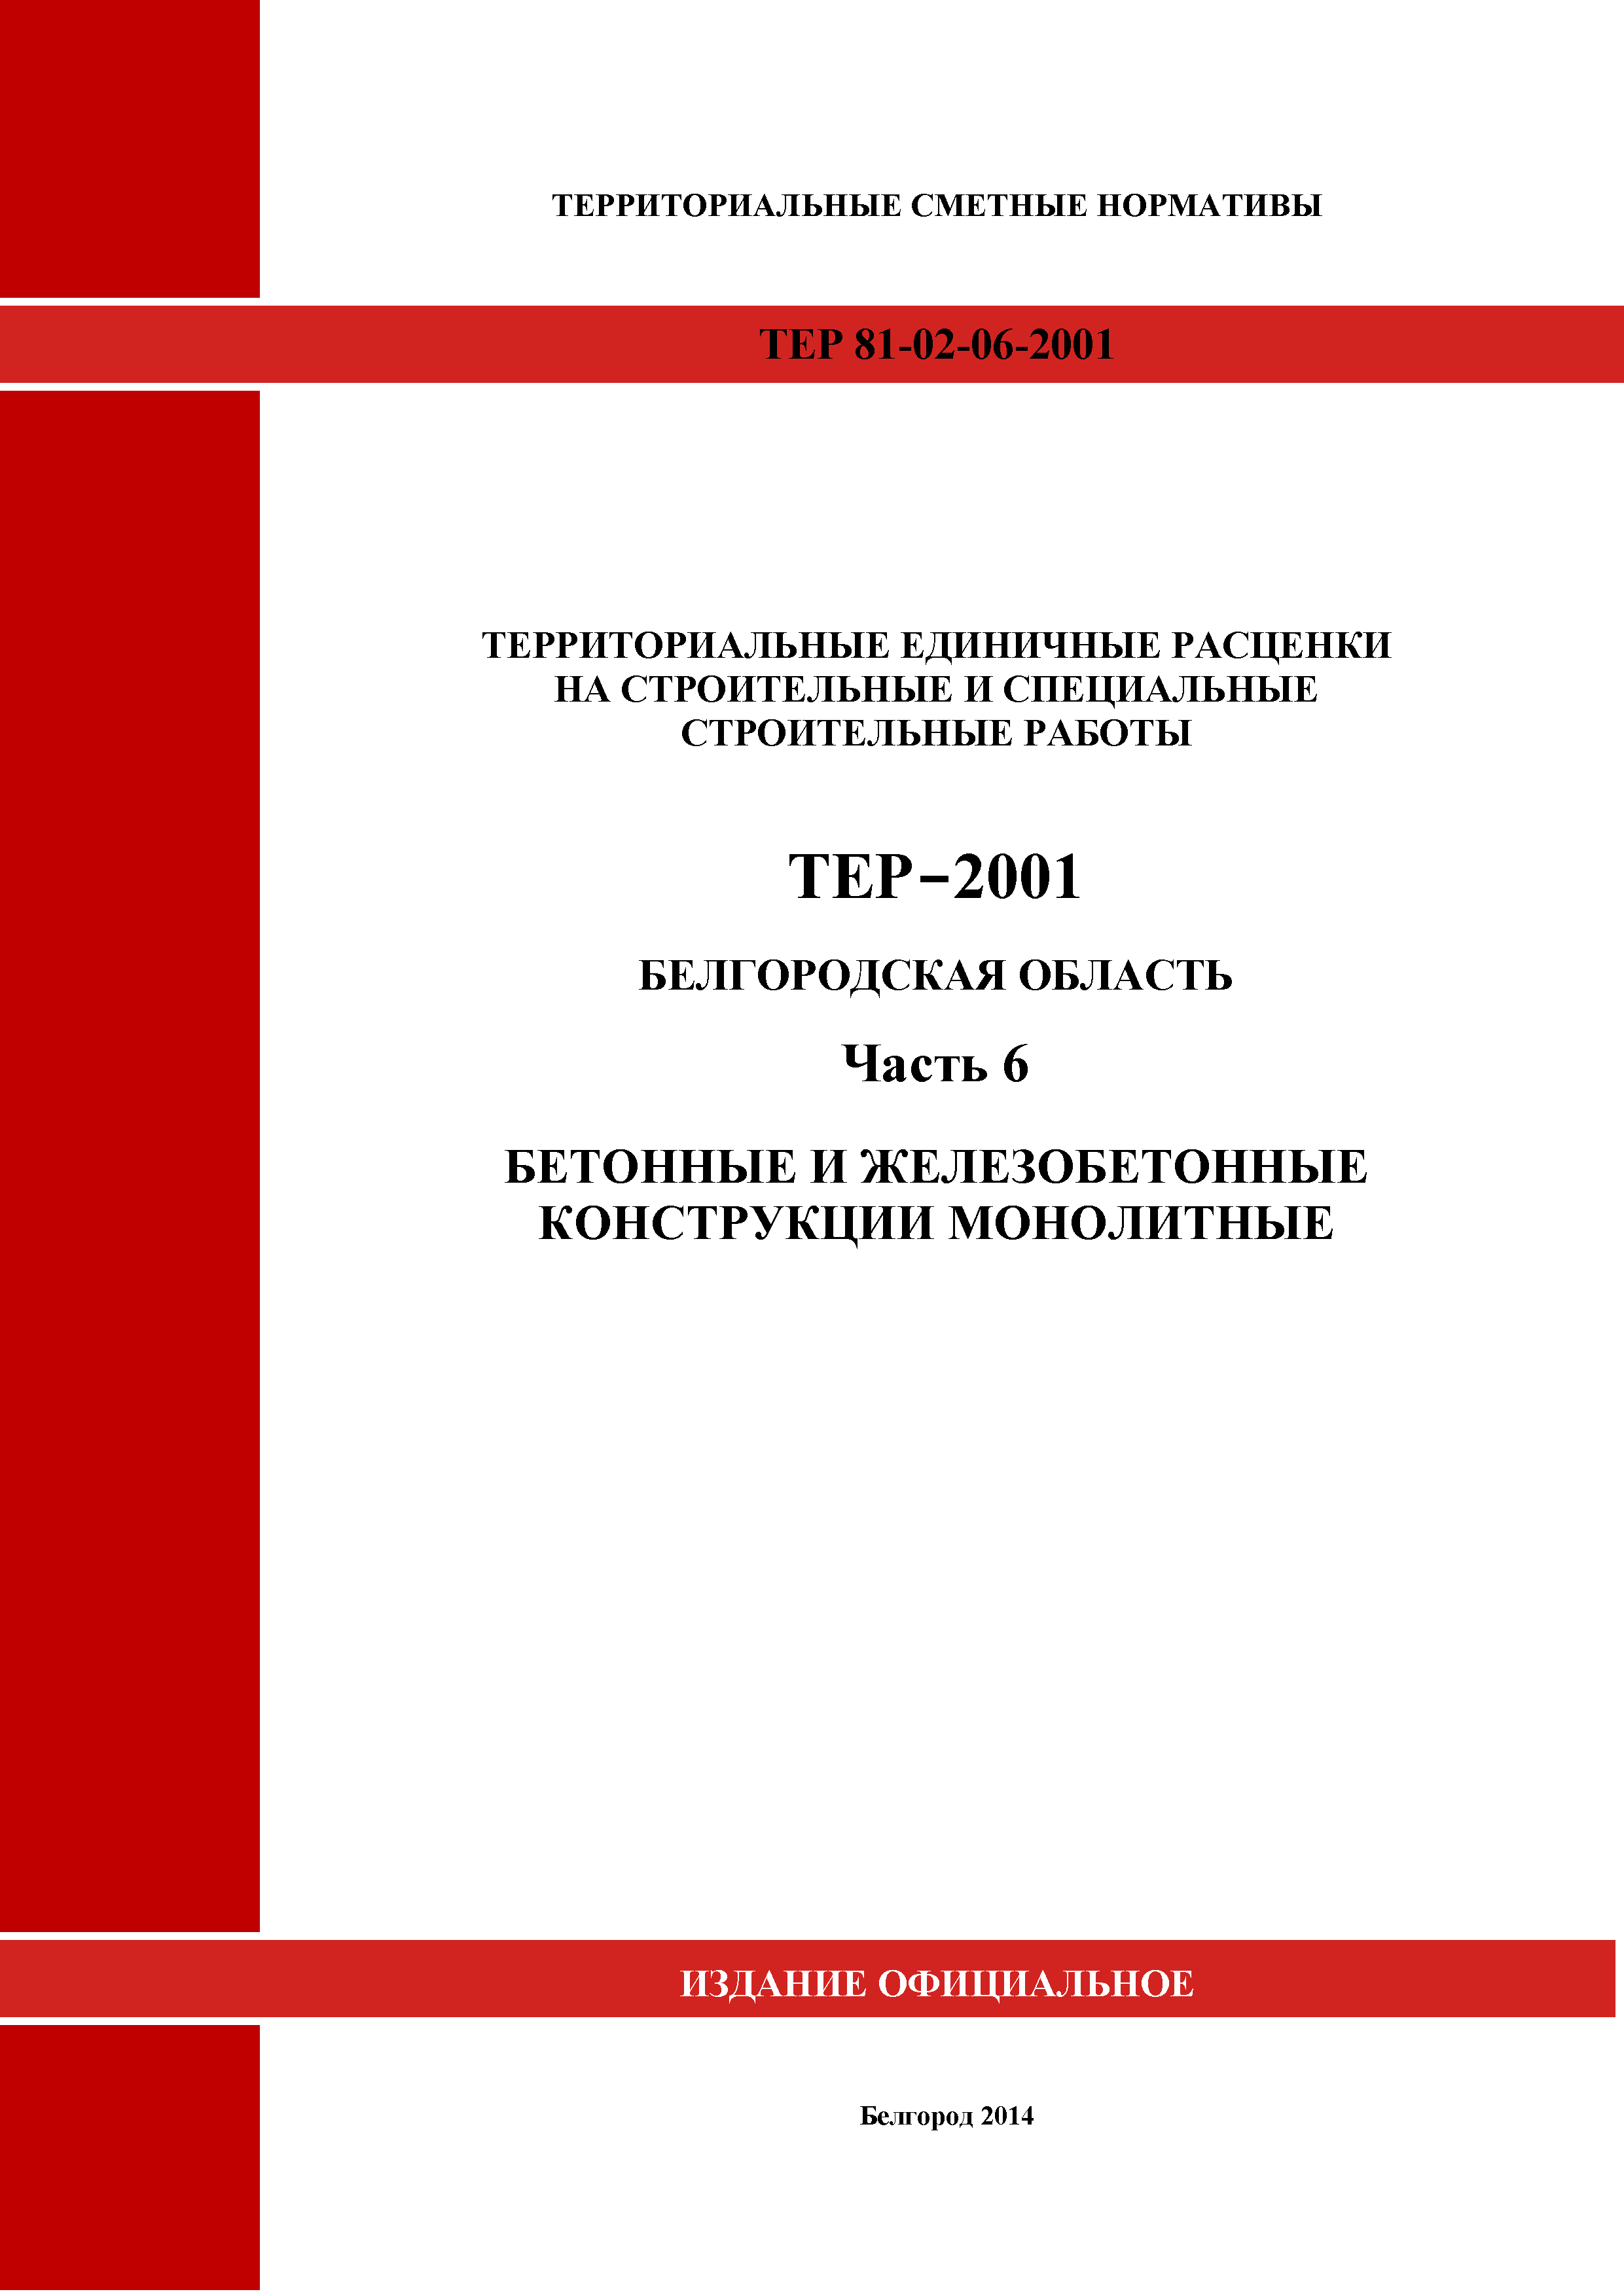 ТЕР Белгородская область 81-02-06-2001